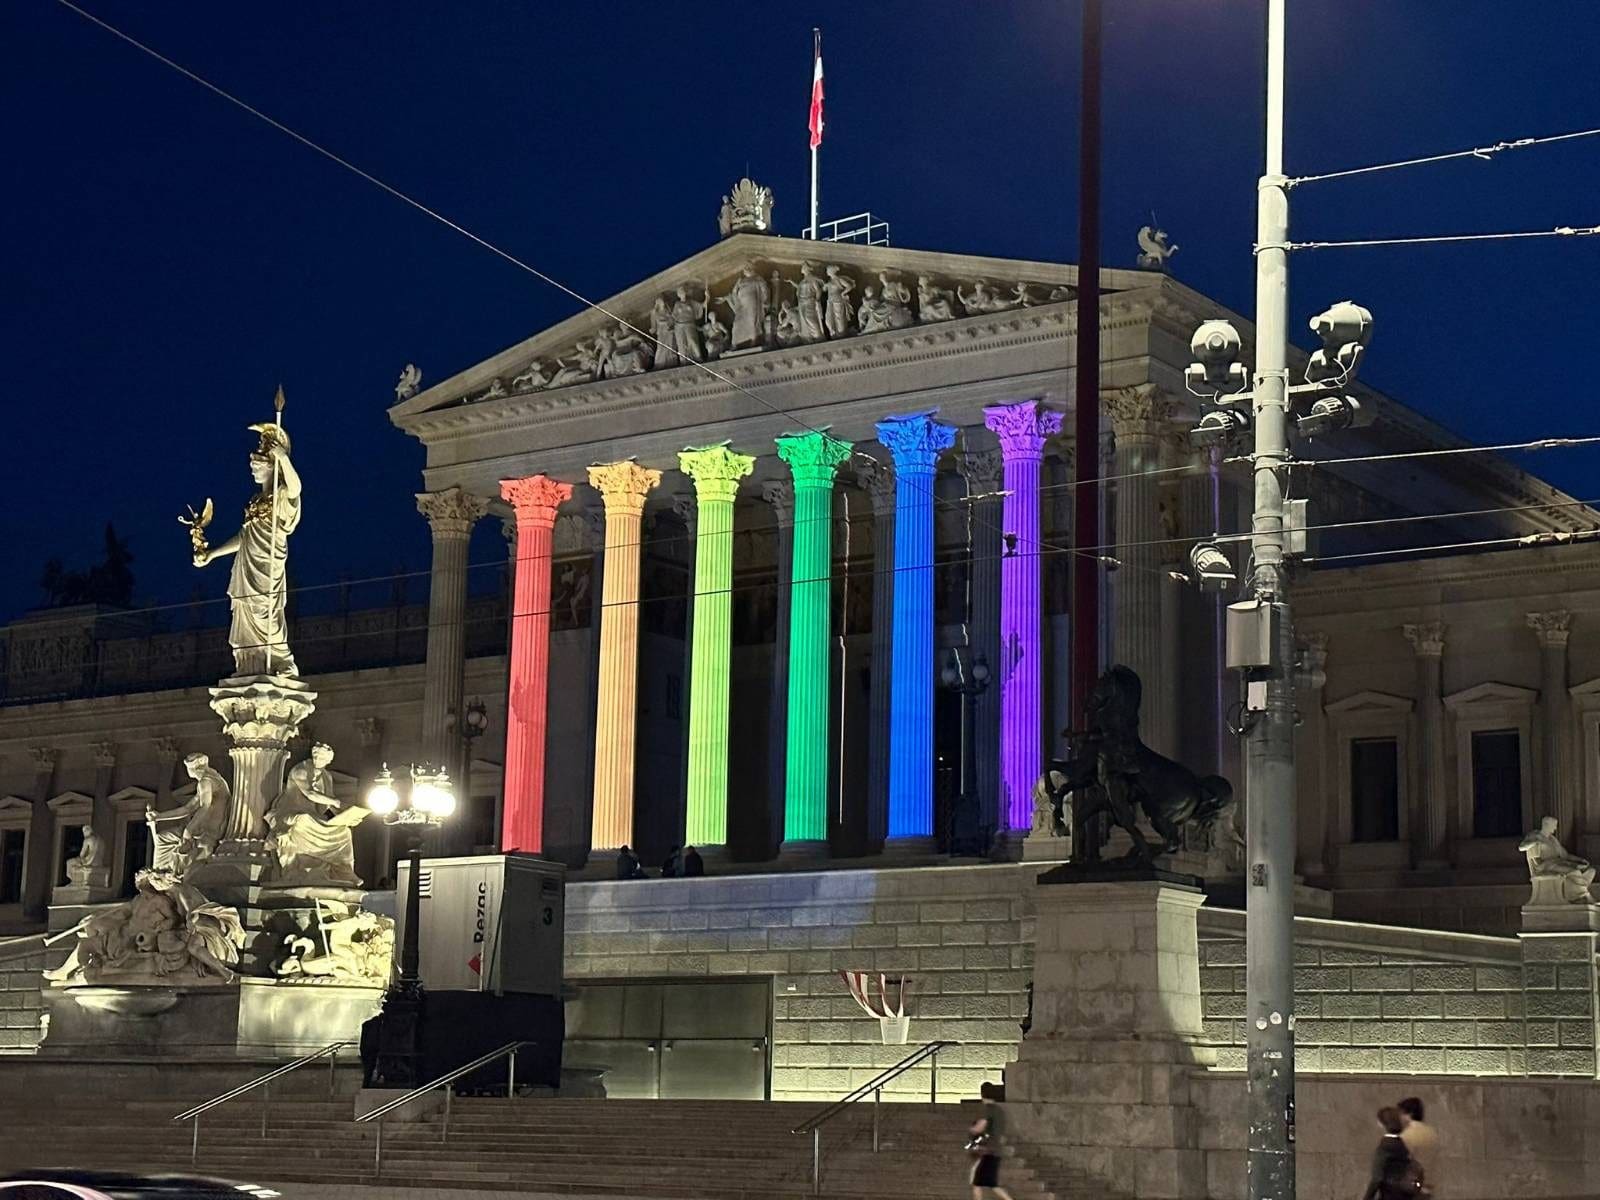 sobotkas-hohes-haus-voll-auf-lgbtiq-propaganda-regenbogen-parlament-und-dragqueen-lesung